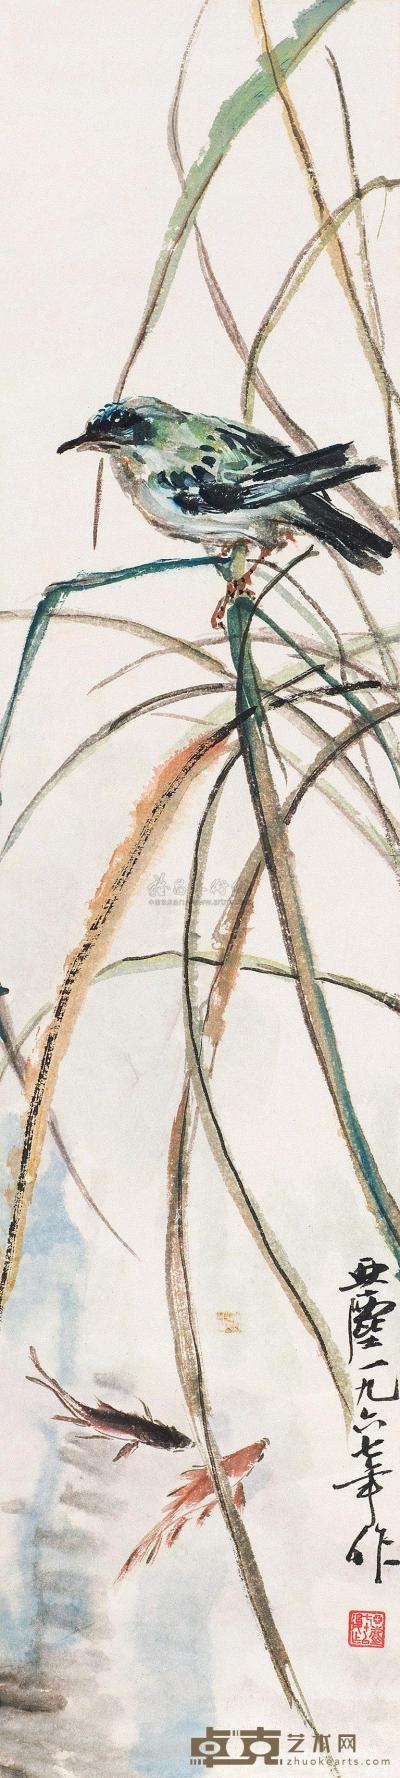 汪亚尘 1967年作 池塘春趣 立轴 91×20.5cm